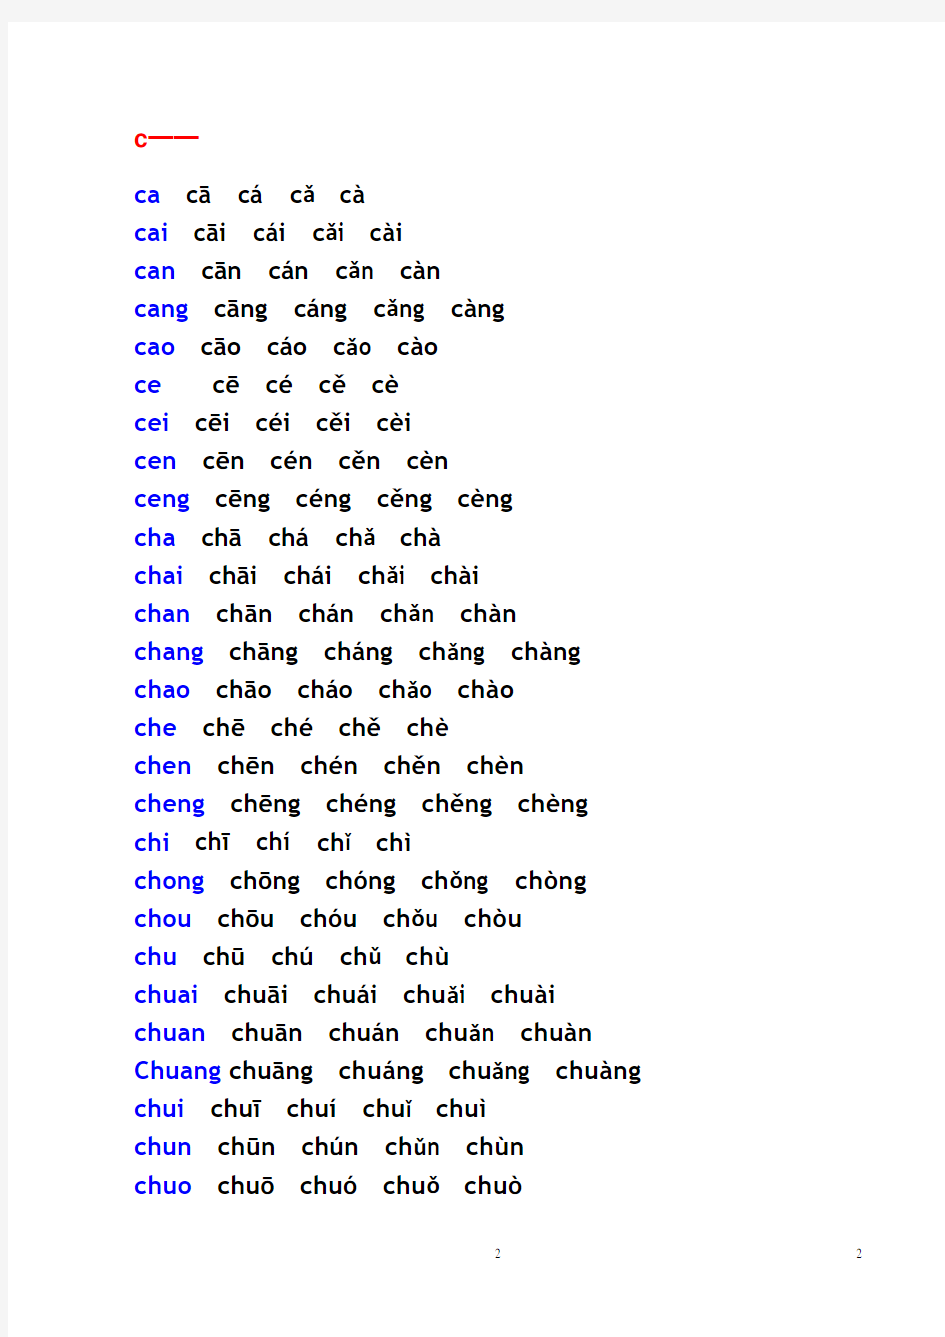 汉语拼音音节表(带声调音节)(2020年10月整理).pdf